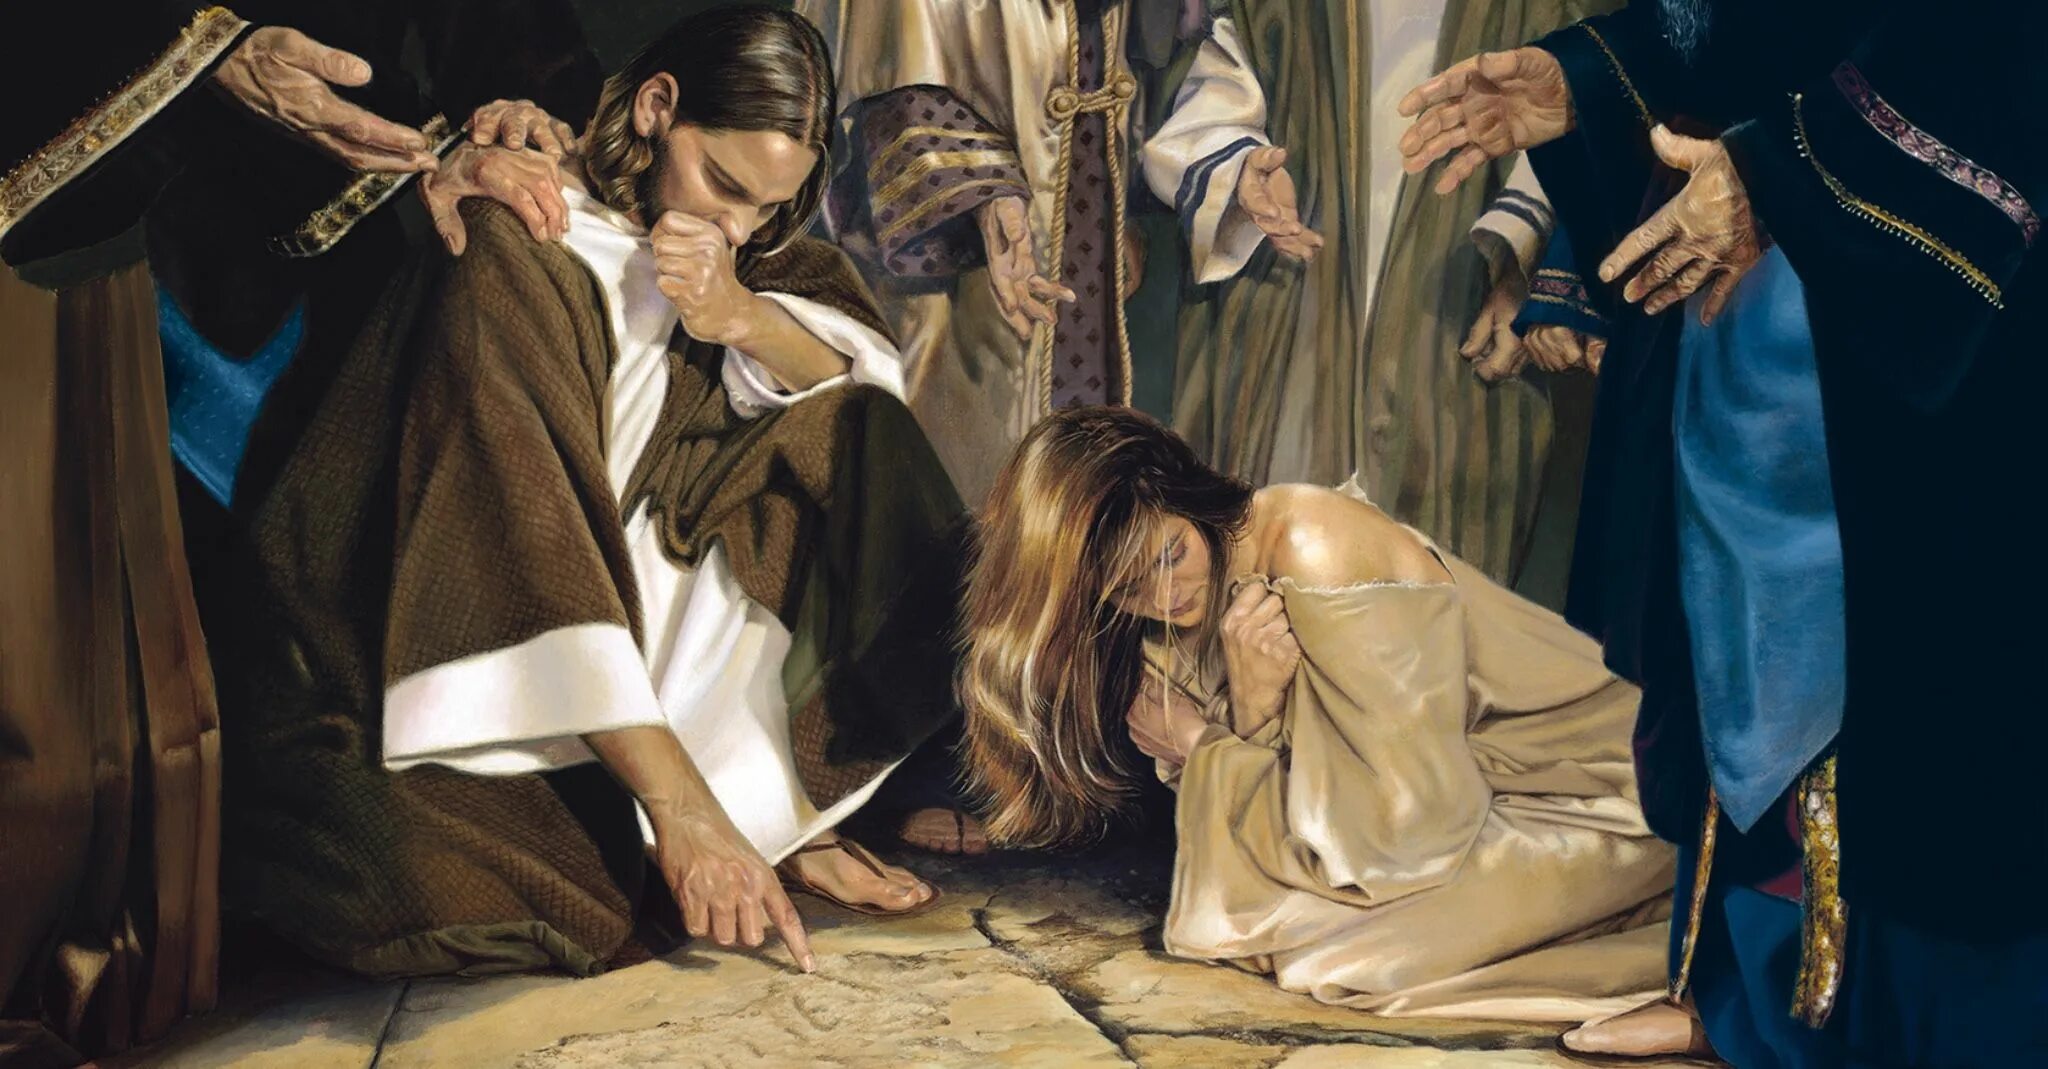 Наказание светы. Адюльтер в средние века-. Иисус и женщина в прелюбодеянии. Иисус Христос и блудница.